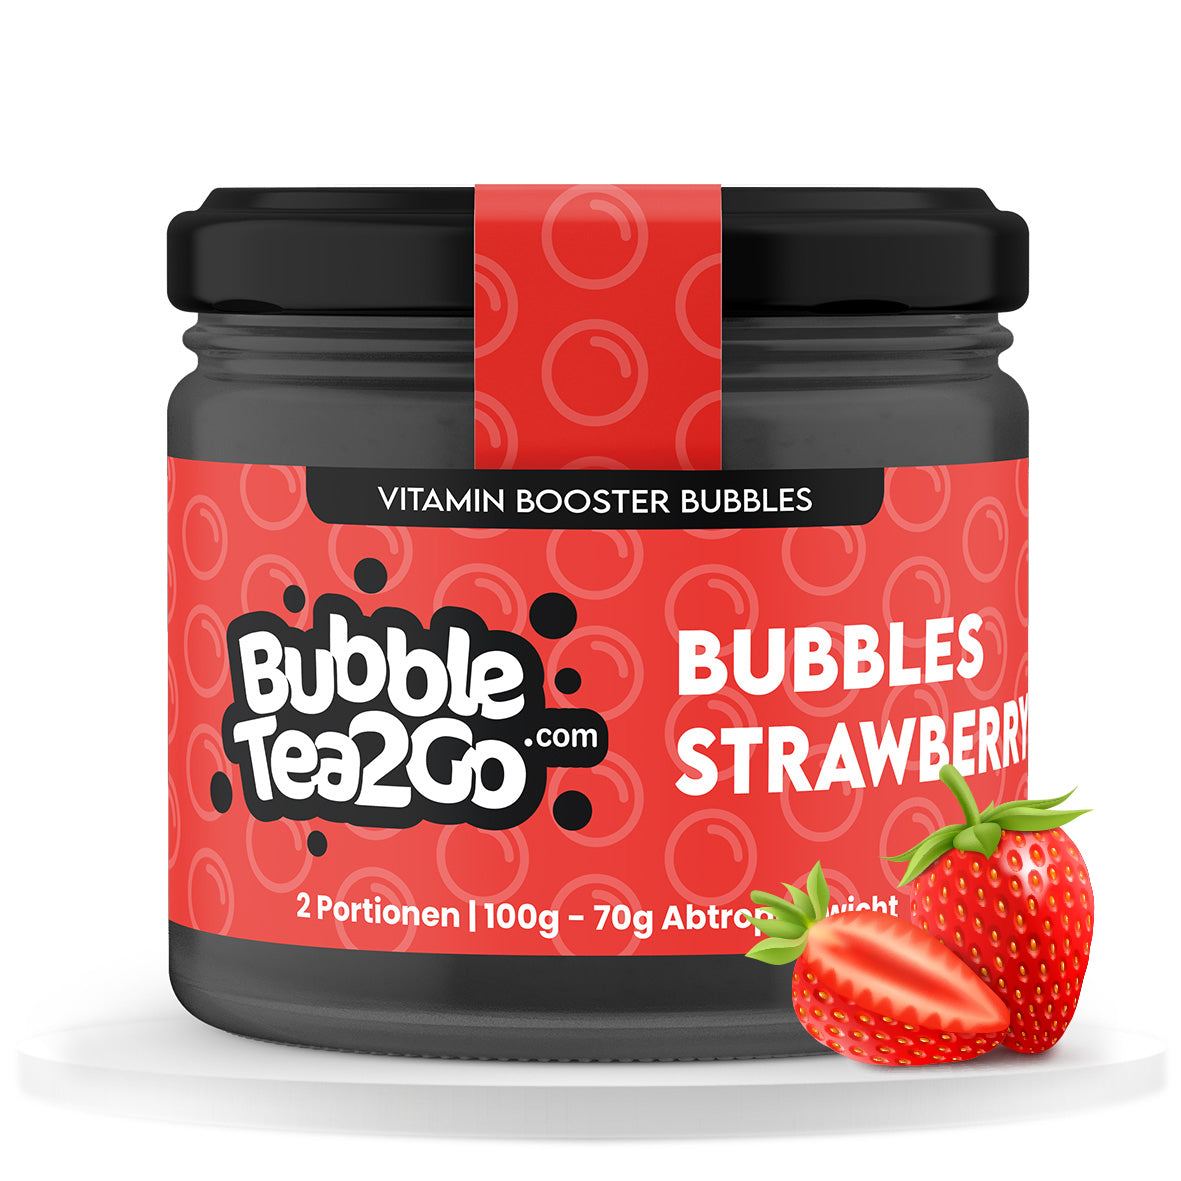 Bubbles - Aardbei 2 porties (120g)